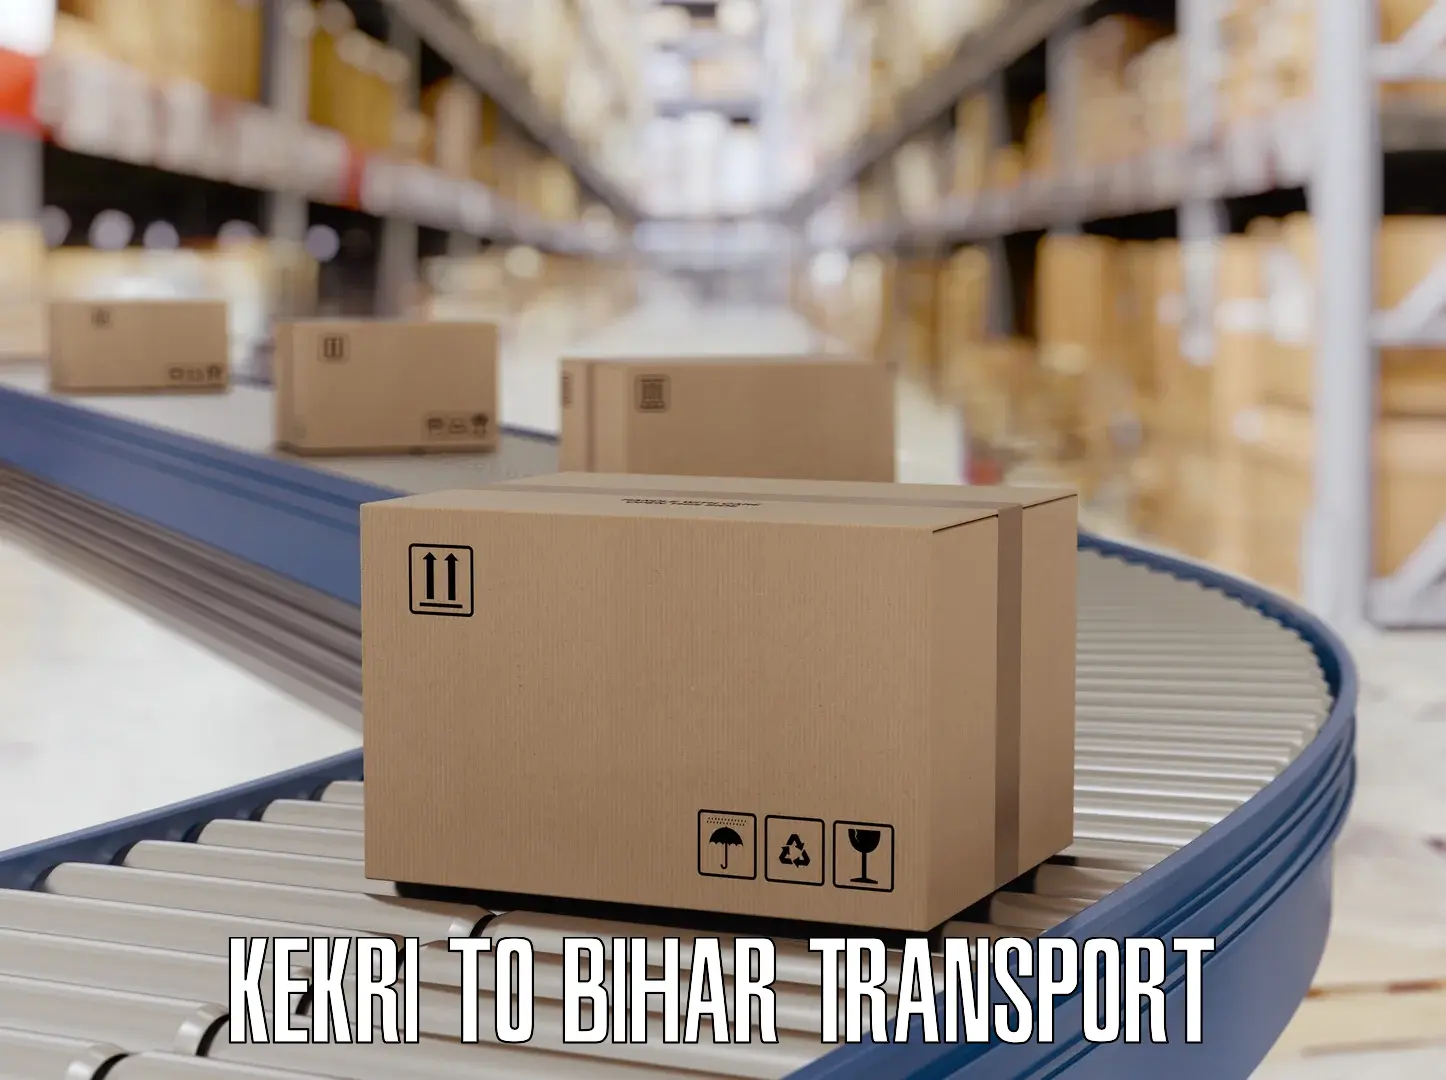 Logistics transportation services Kekri to Kishunganj